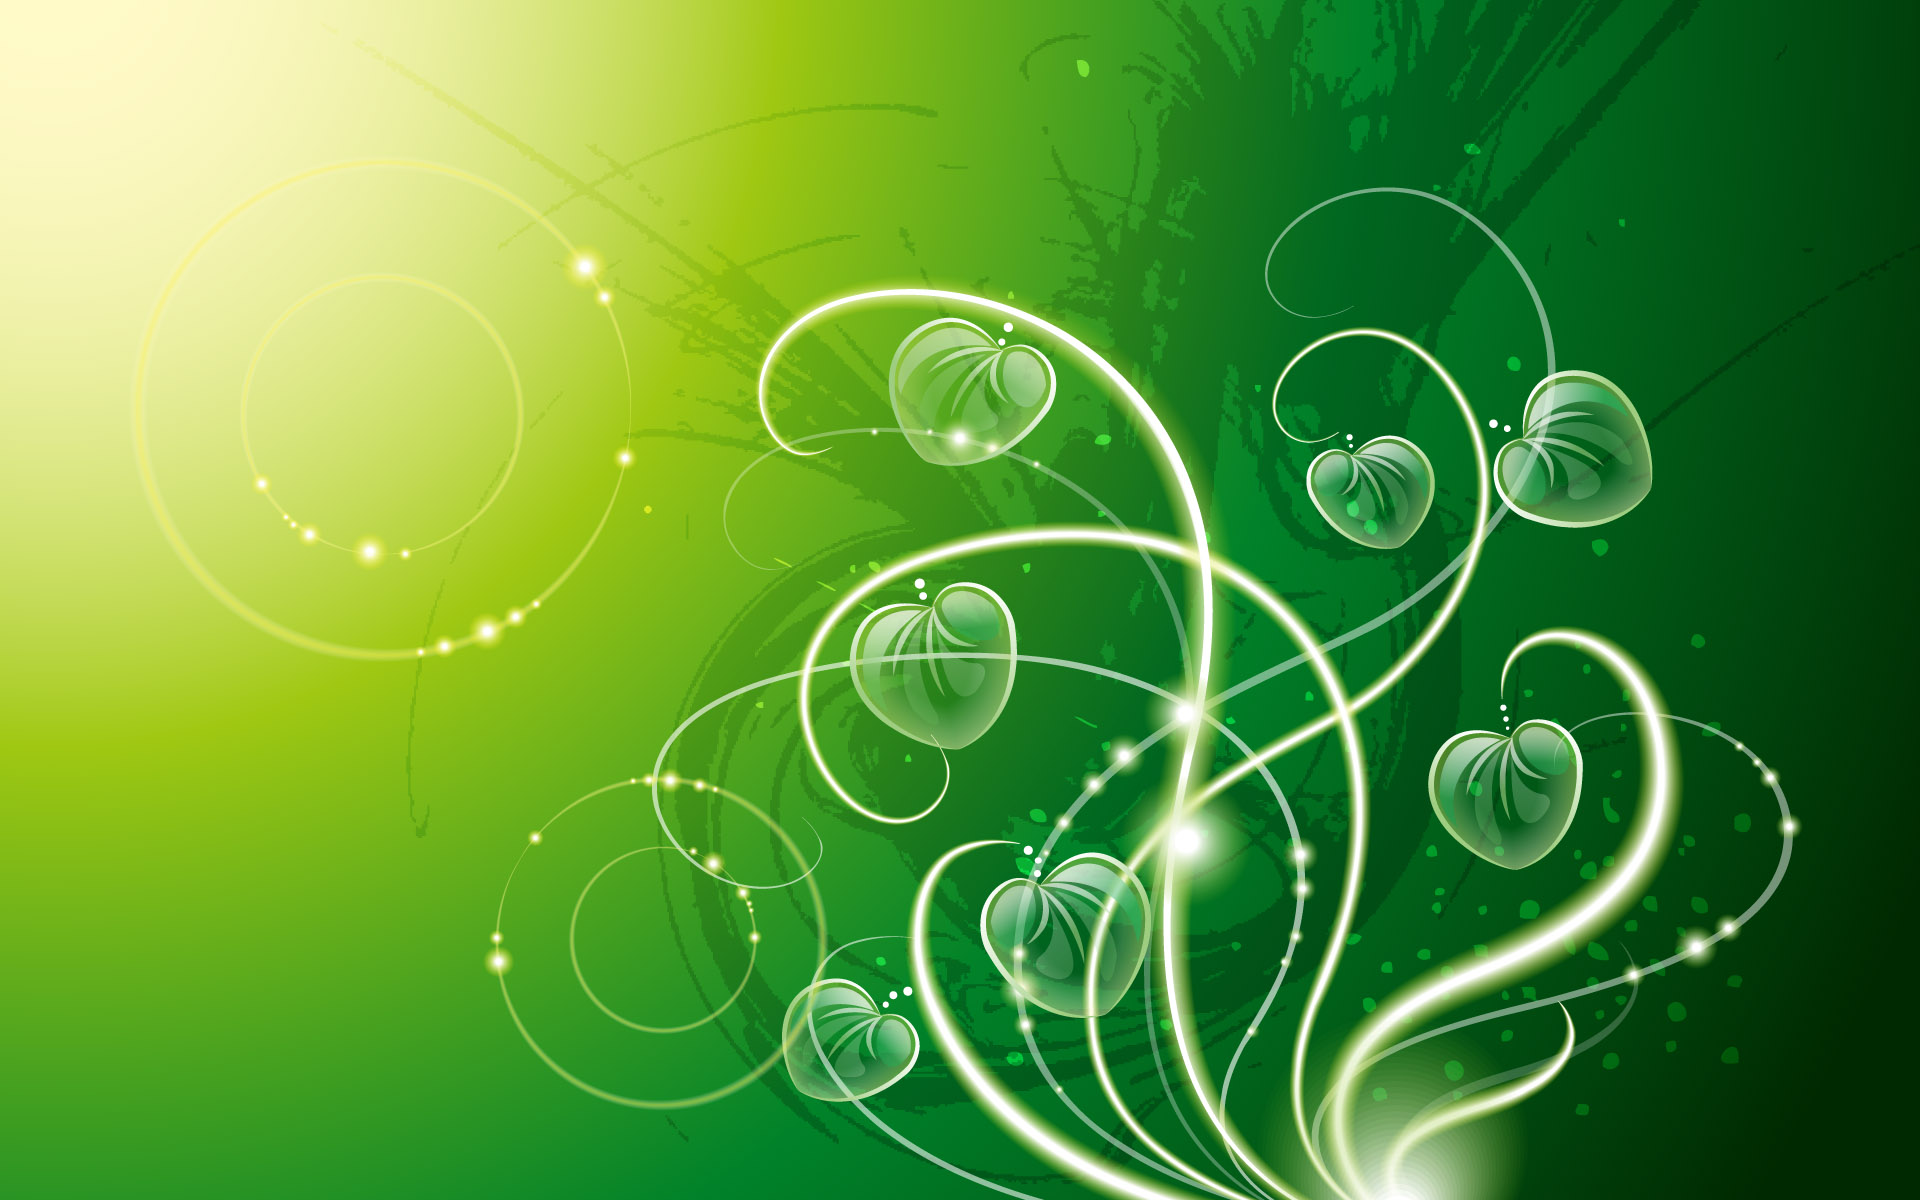 Abstract green desktop wallpaper